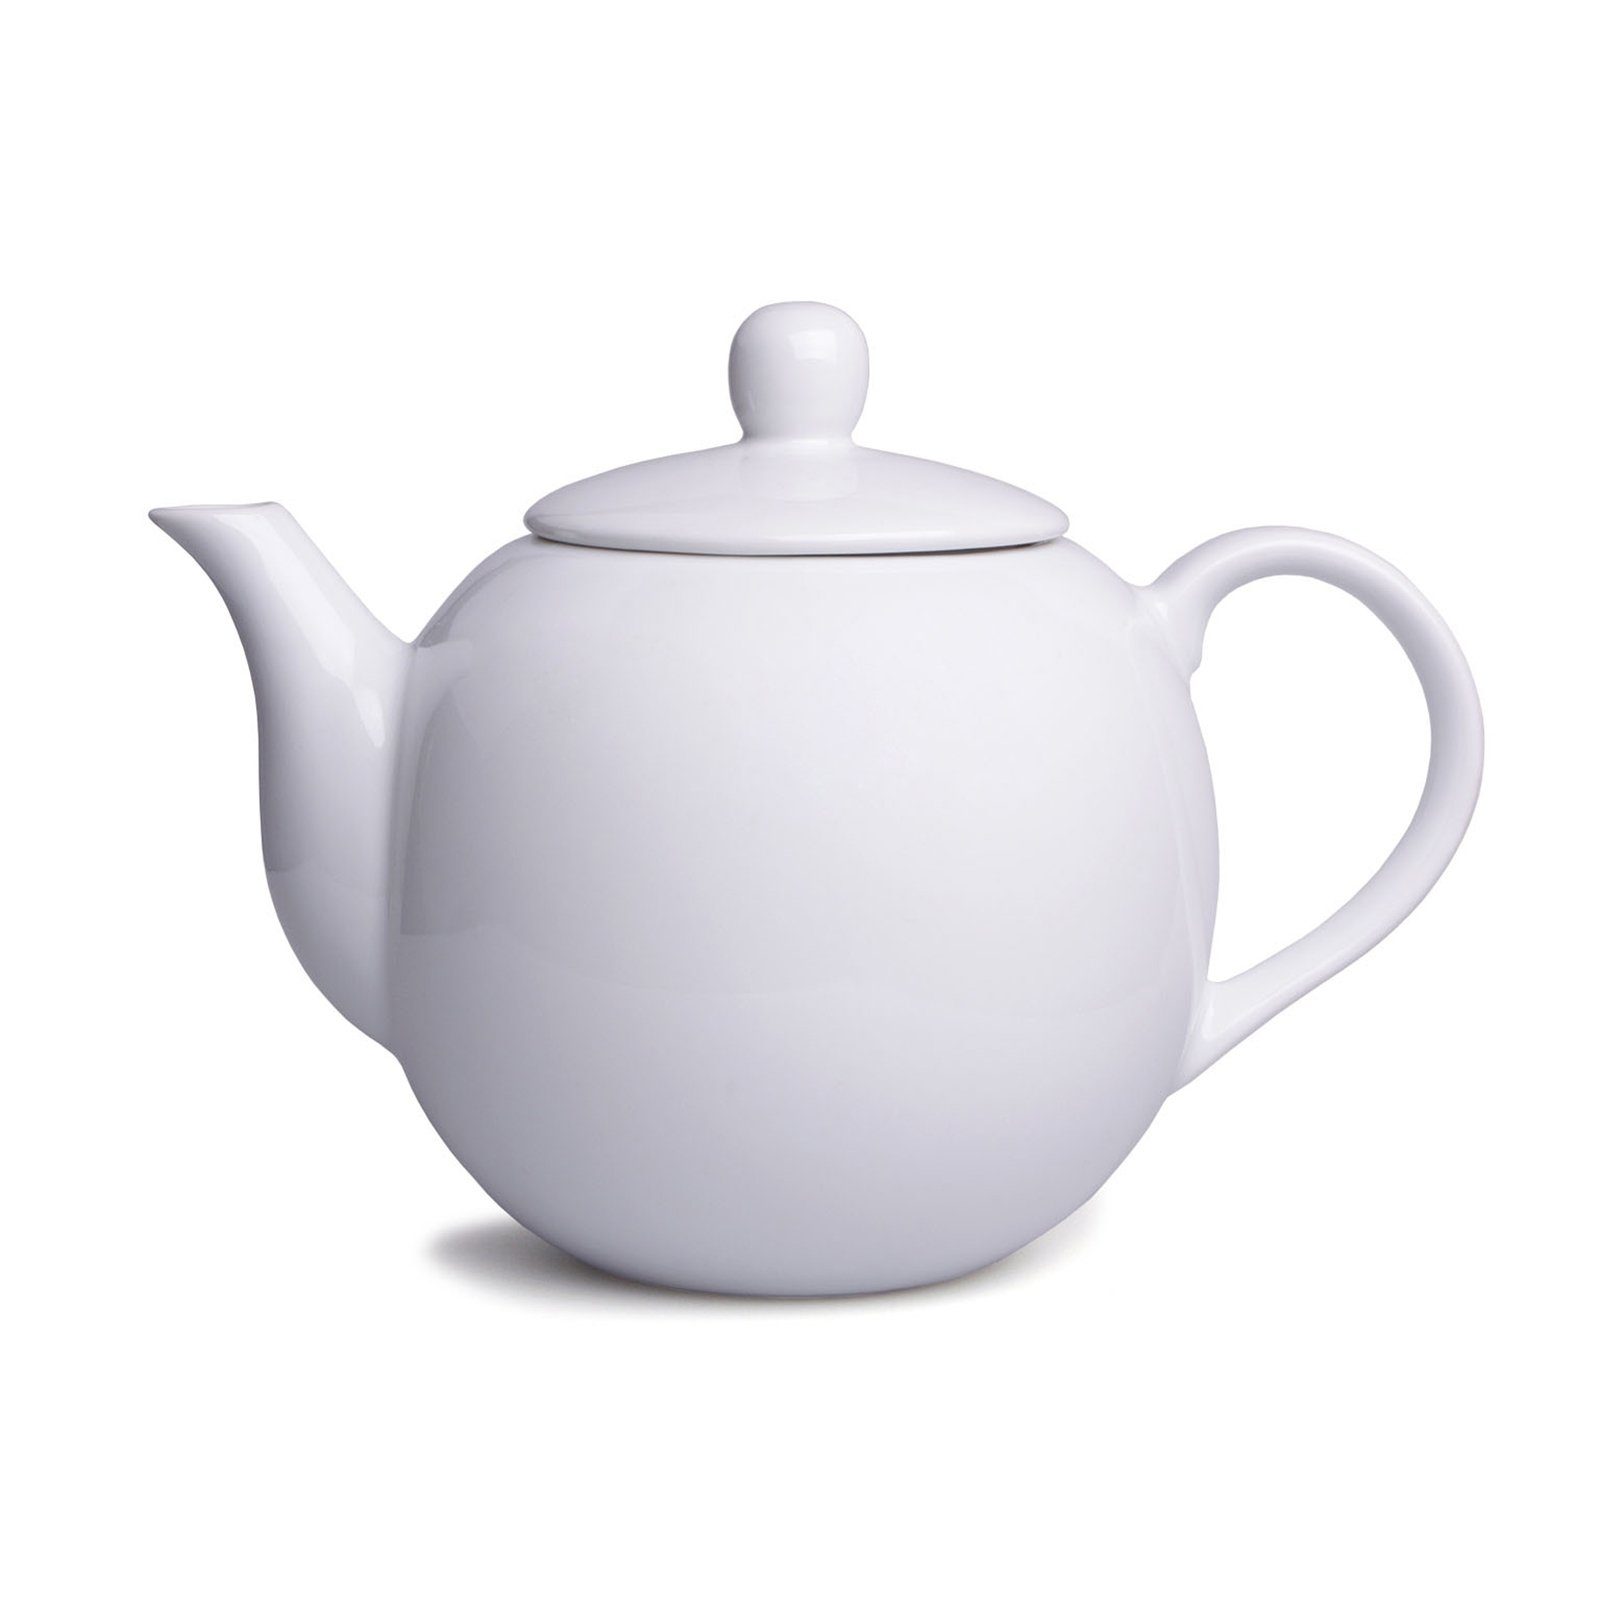 Neuetischkultur Teekanne Teekanne Weiß Porzellan, 1.1 l, Kanne Vintage Porzellan